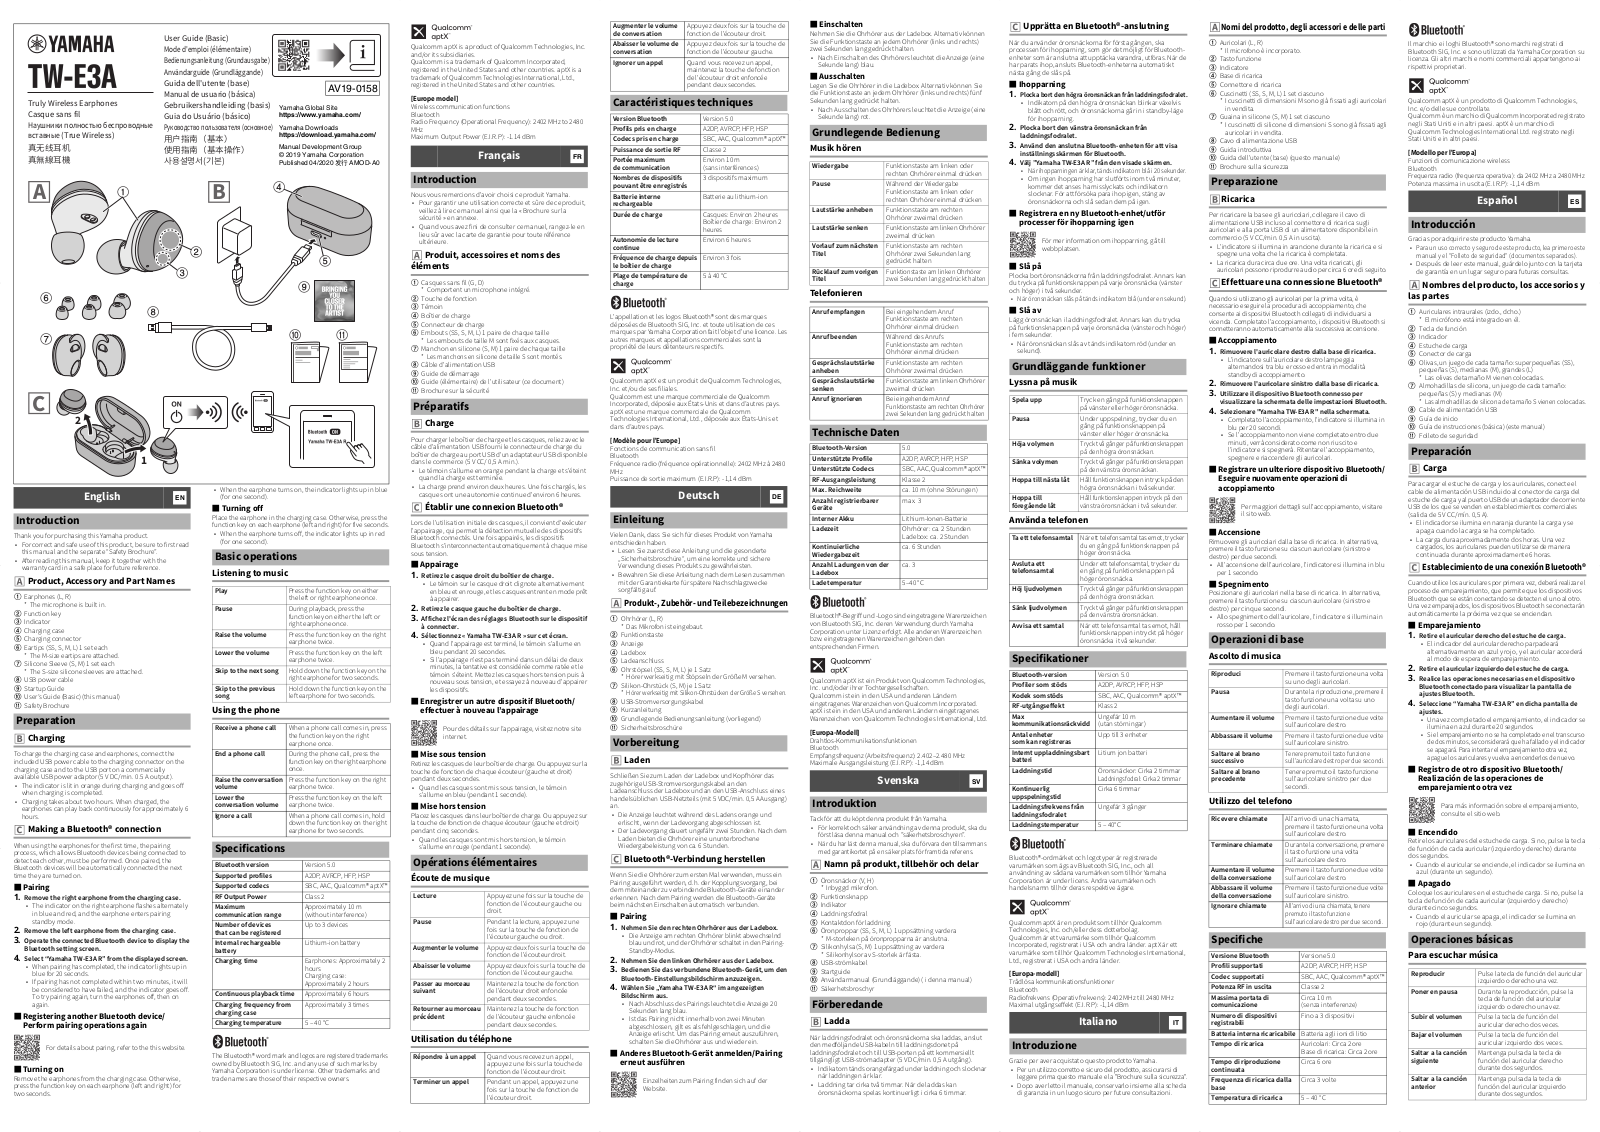 Yamaha TW-E3A User Manual